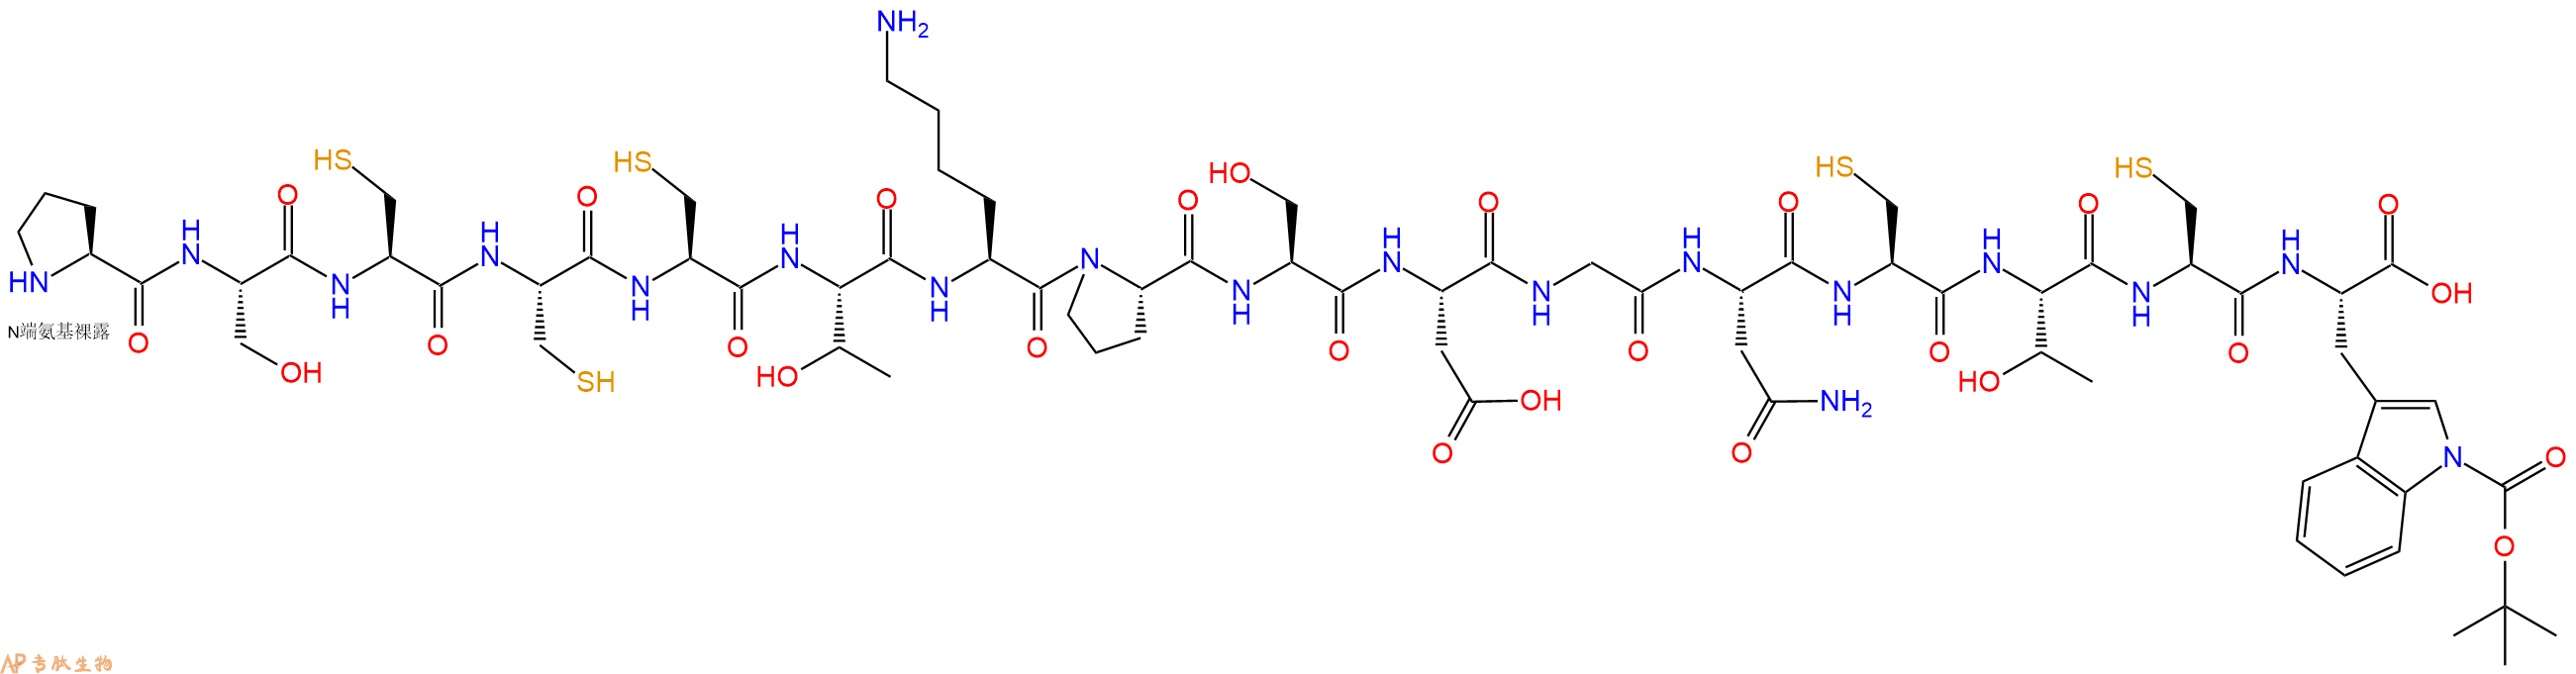 专肽生物产品H2N-Pro-Ser-Cys-Cys-Cys-Thr-Lys-Pro-Ser-Asp-Gly-Asn-Cys-Thr-Cys-Trp(Boc)-COOH